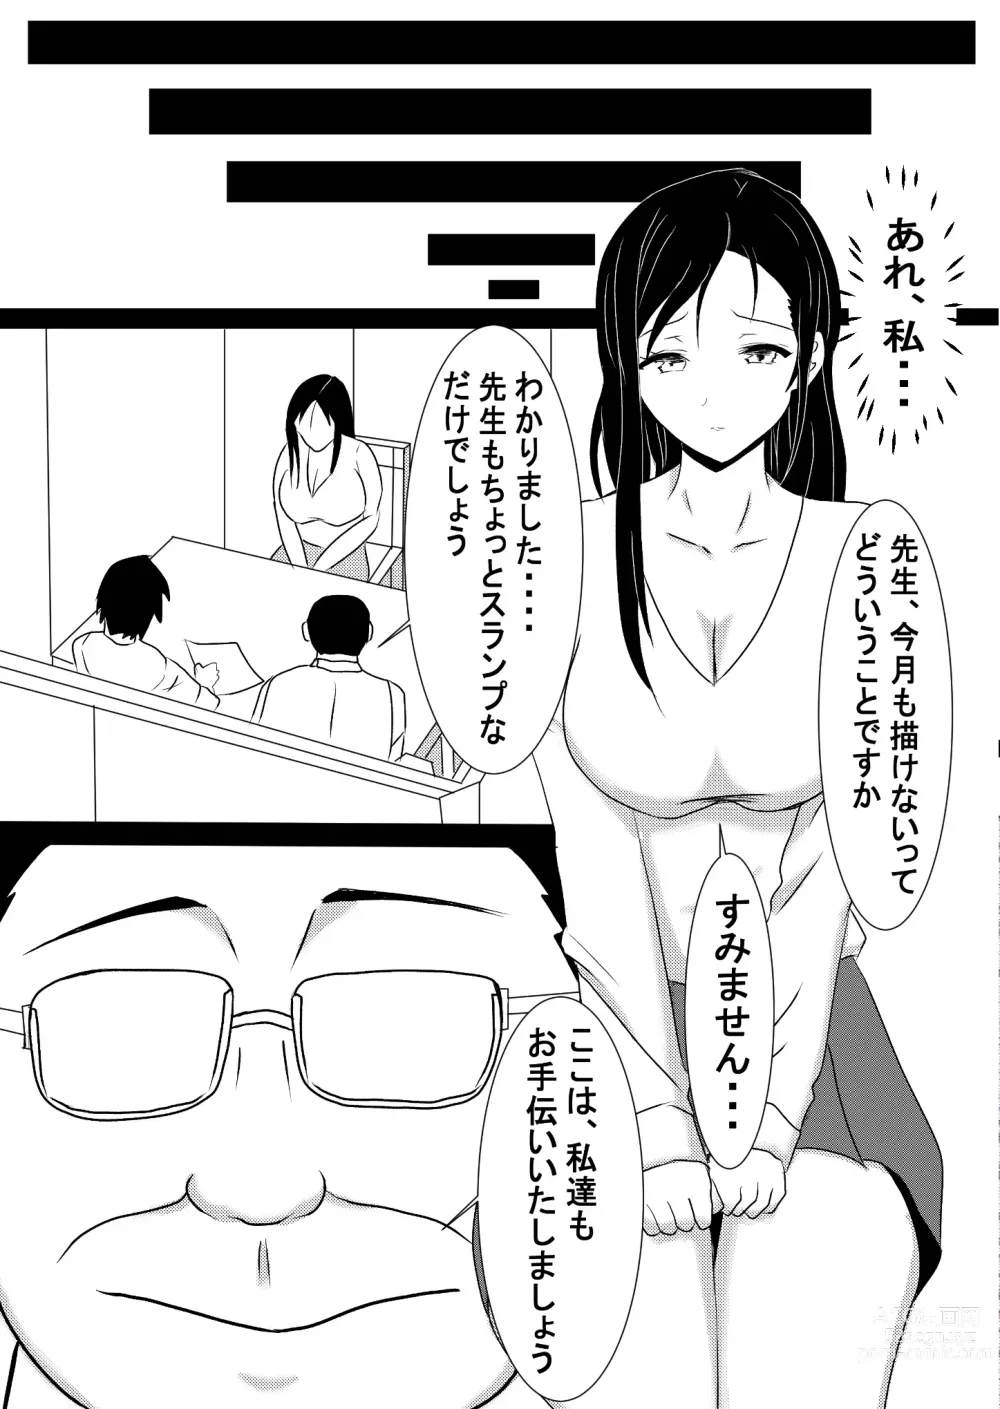 Page 10 of doujinshi Onna Ero Mangaka Tachibana Kyouko wa Yume o Miru